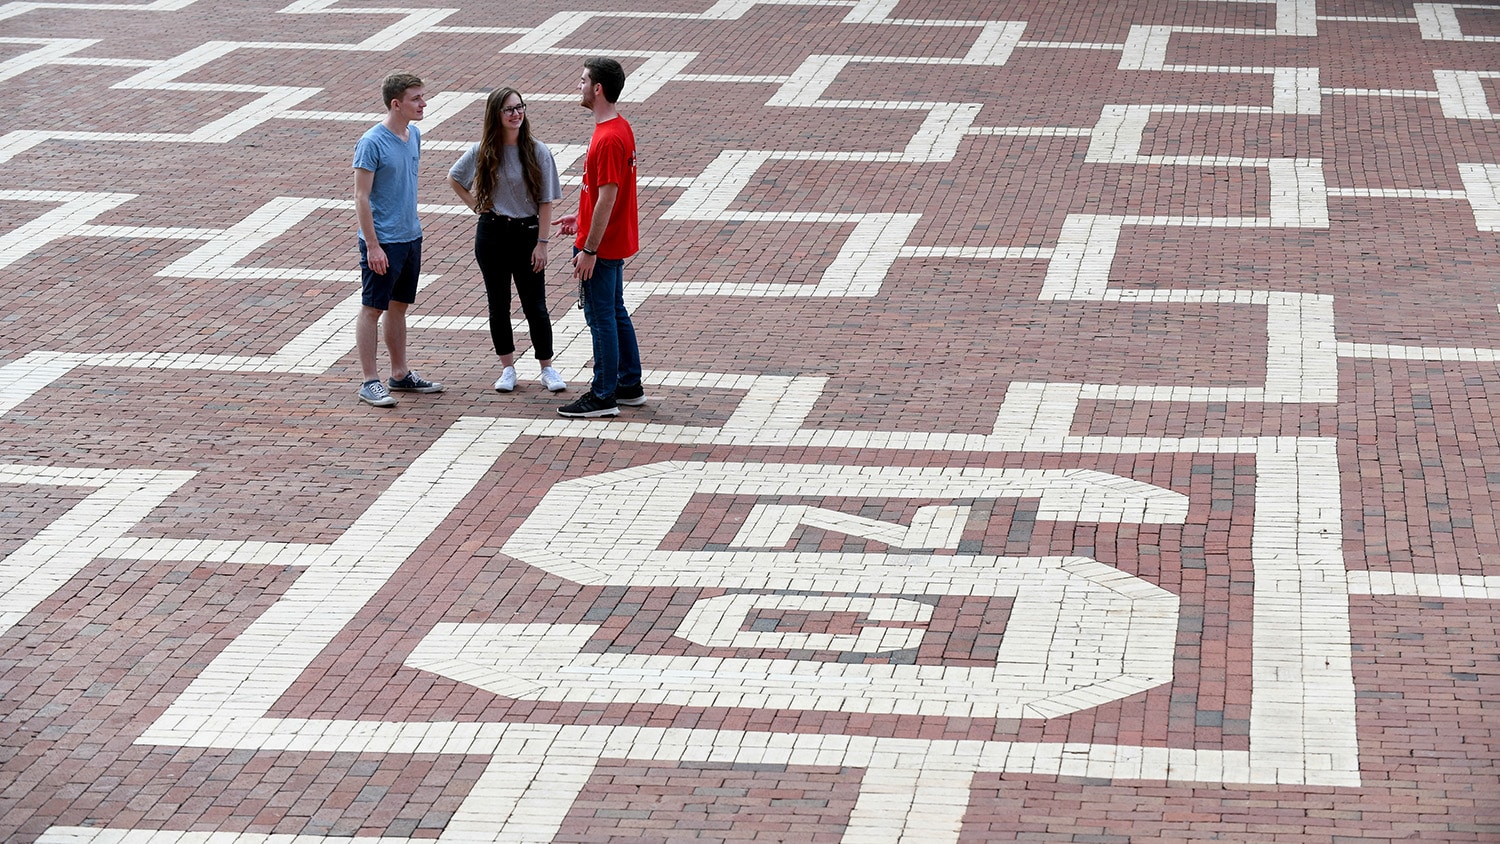 Three students talk in the Brickyard.